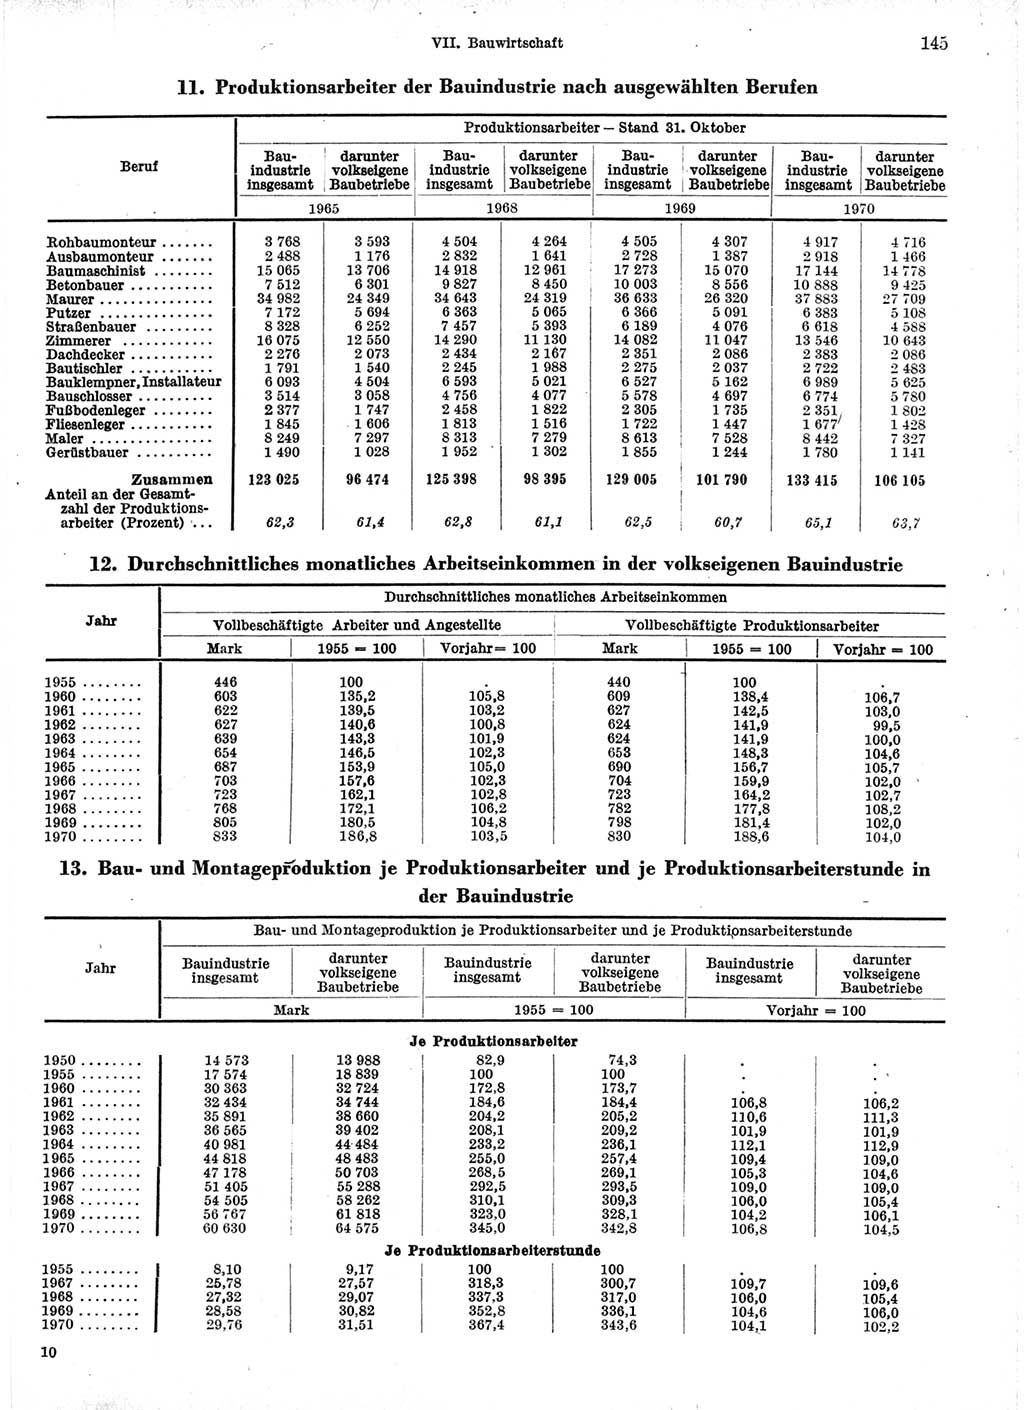 Statistisches Jahrbuch der Deutschen Demokratischen Republik (DDR) 1971, Seite 145 (Stat. Jb. DDR 1971, S. 145)